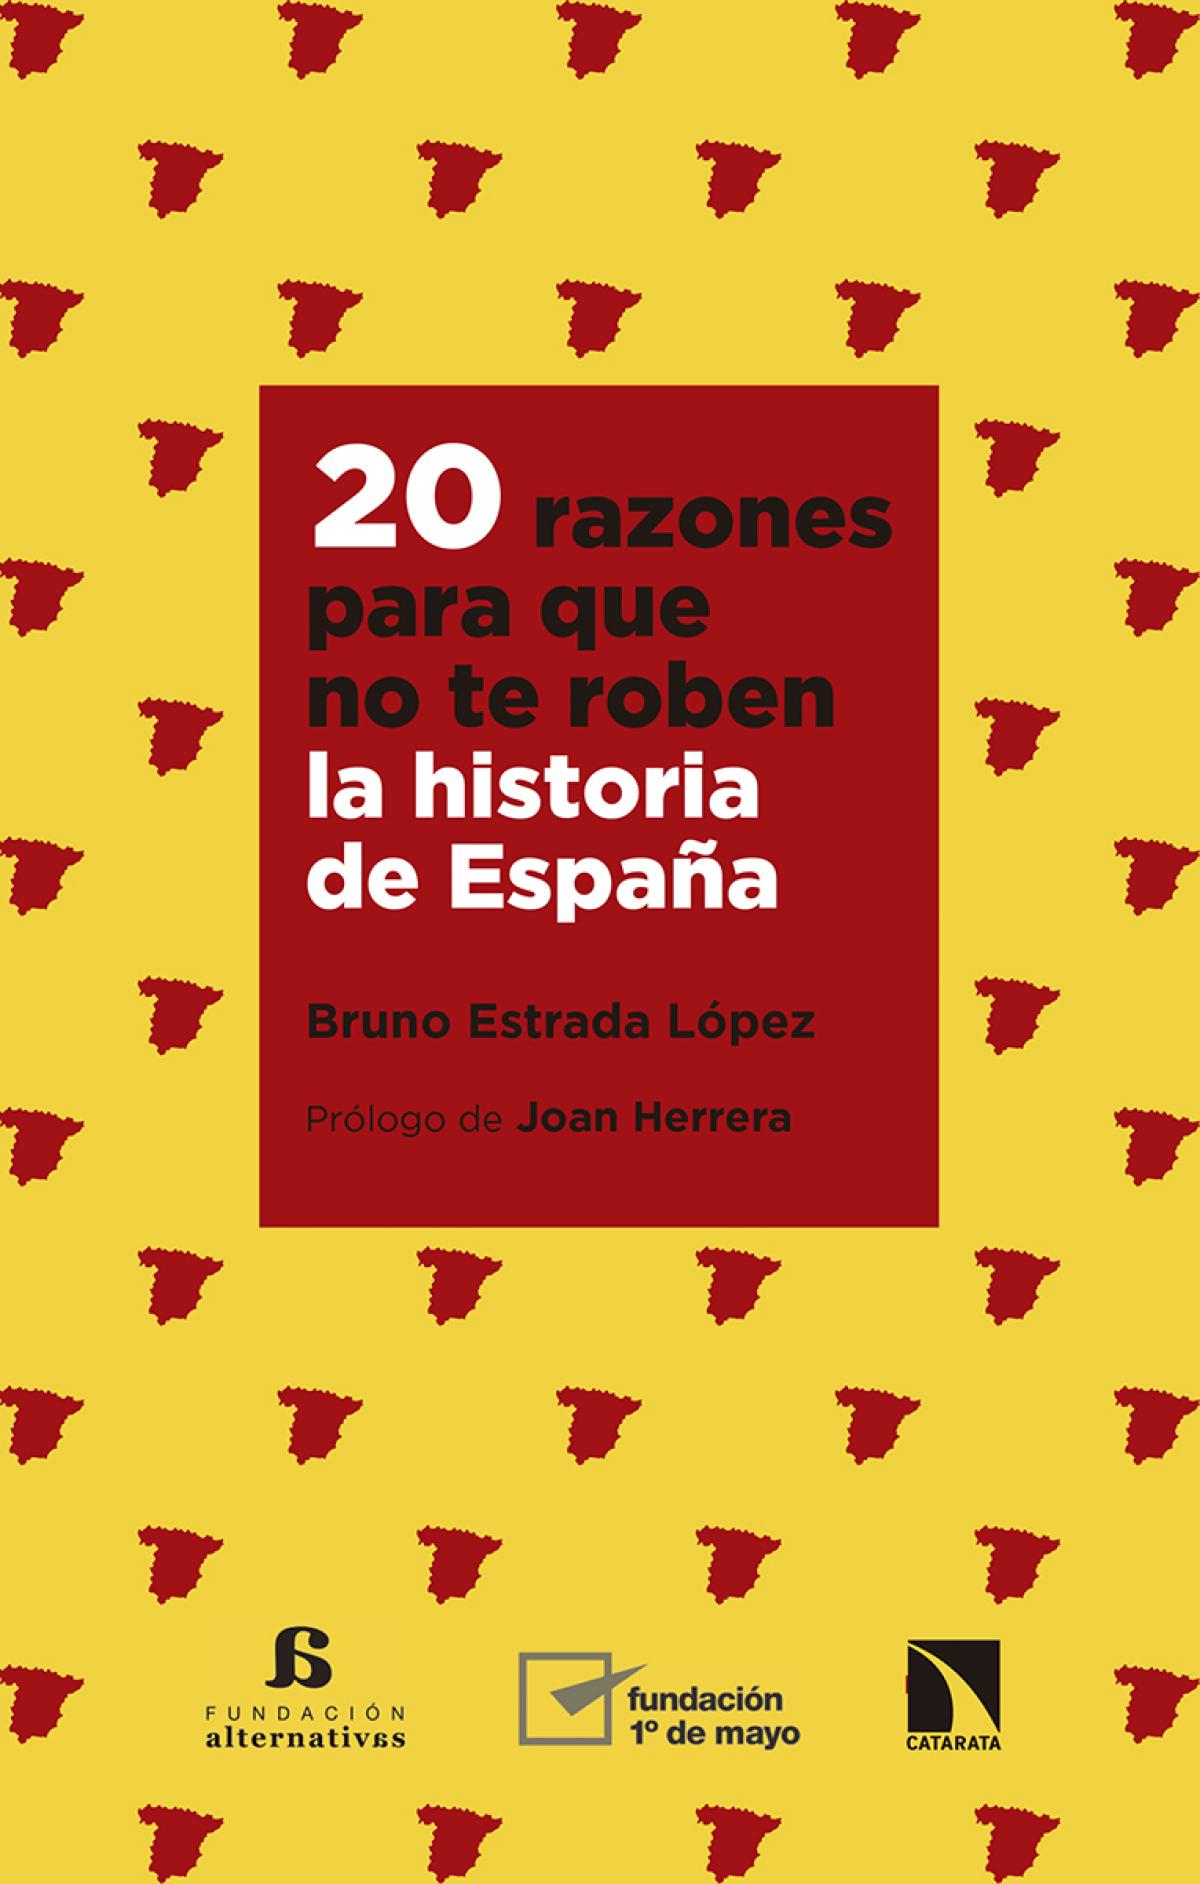 Portada del libro "20 razones para que no te roben la historia de España"